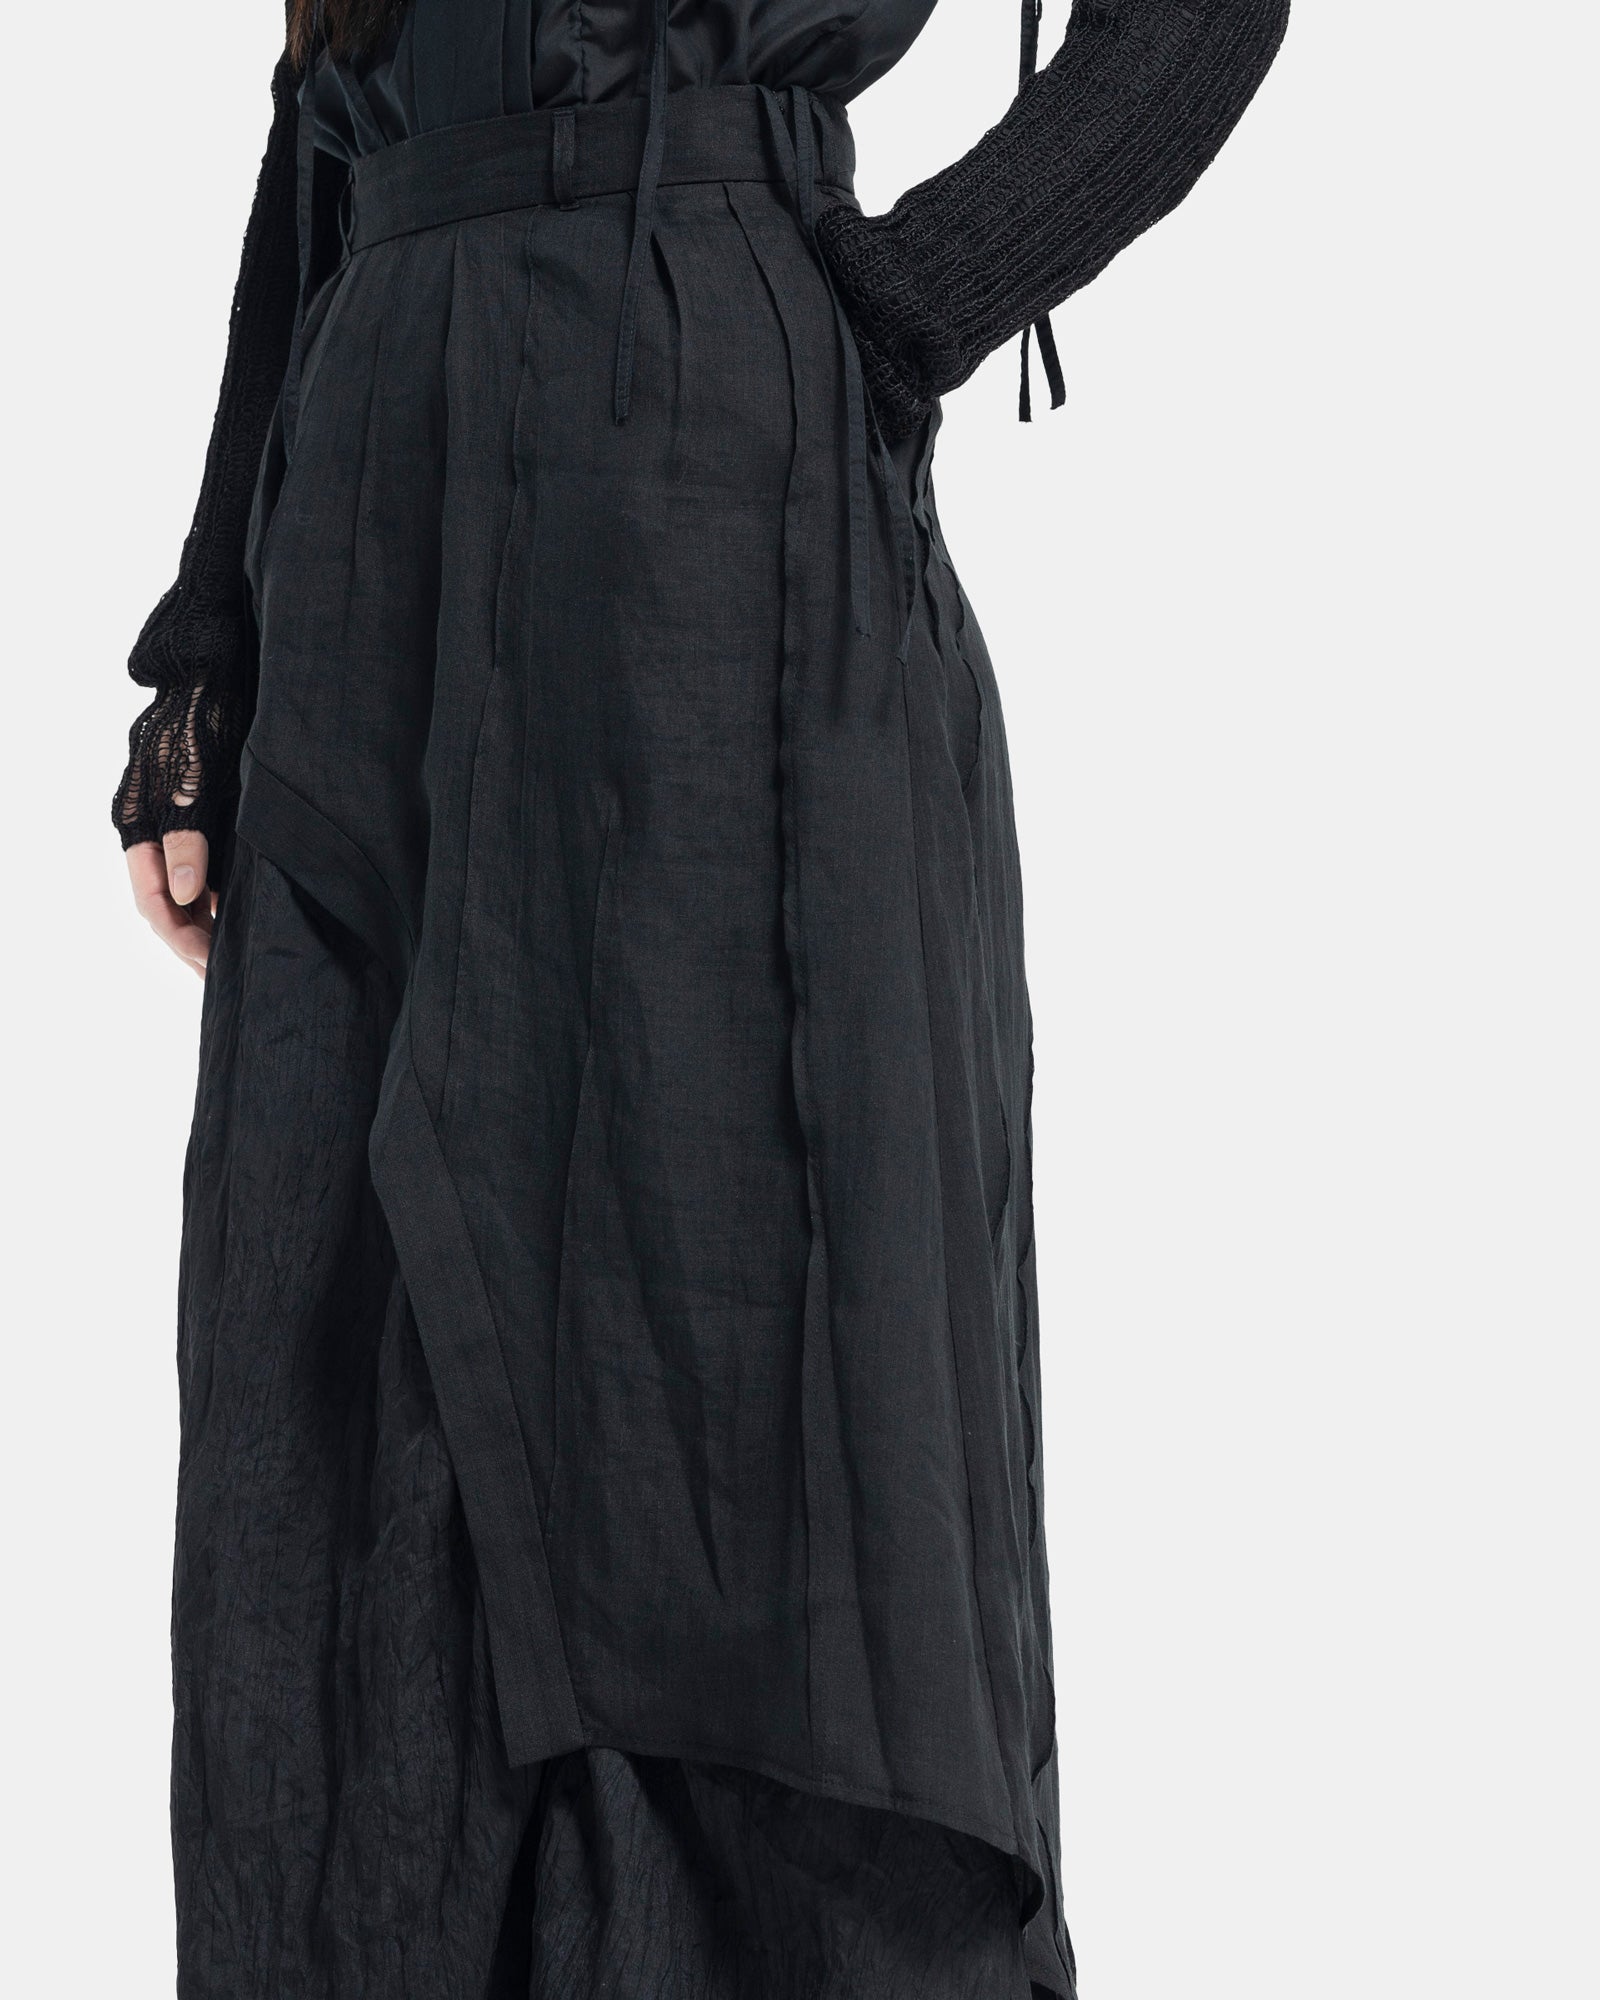 Female model wearing Professor.E black asymmetric skirt on white background